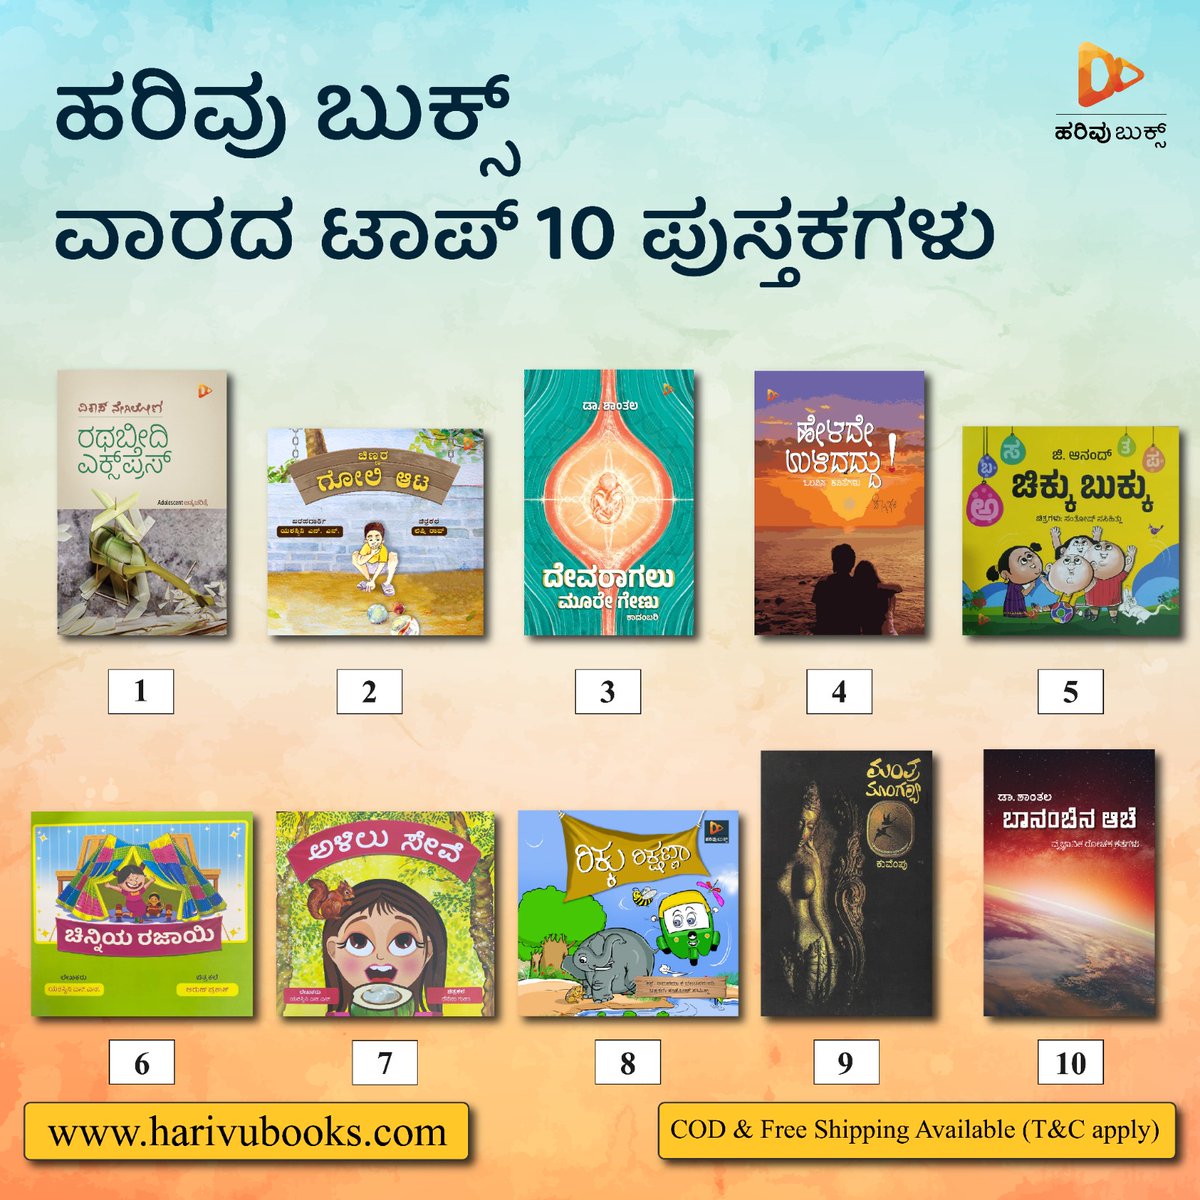 ಈ ವಾರದ ಟಾಪ್‌ 10 ಪುಸ್ತಕಗಳು!
harivubooks.com/collections/va…

#top10 #topsellingbooks #mustread #mustreadbook #harivu #harivubooks #hrivupublication